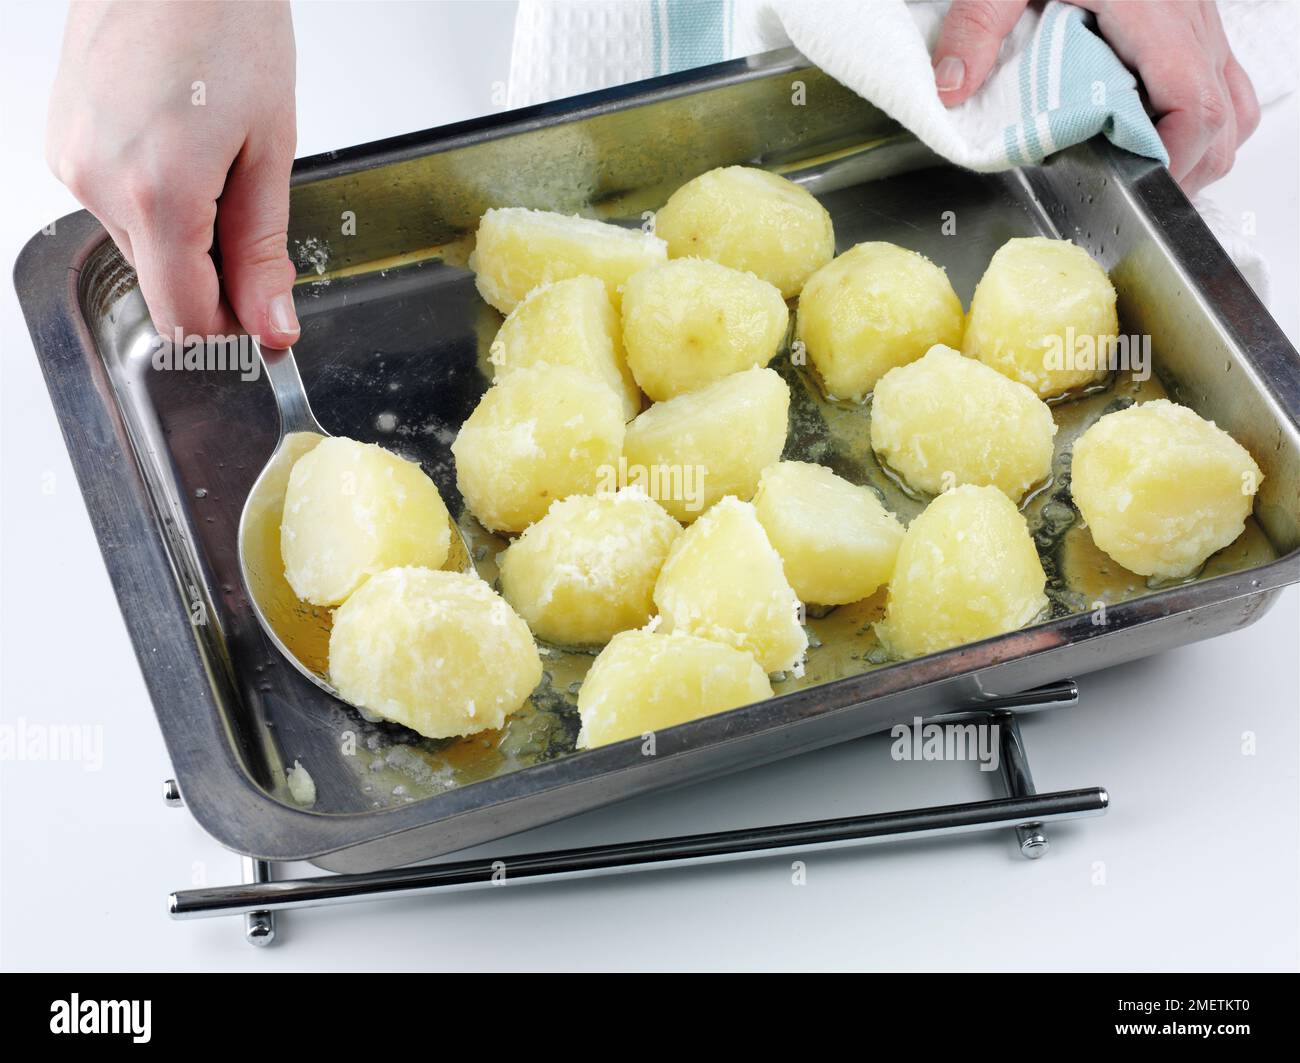 Preparare patate arrosto, mettere patate precotte in una teglia da forno e rivestirle con grasso d'oca Foto Stock